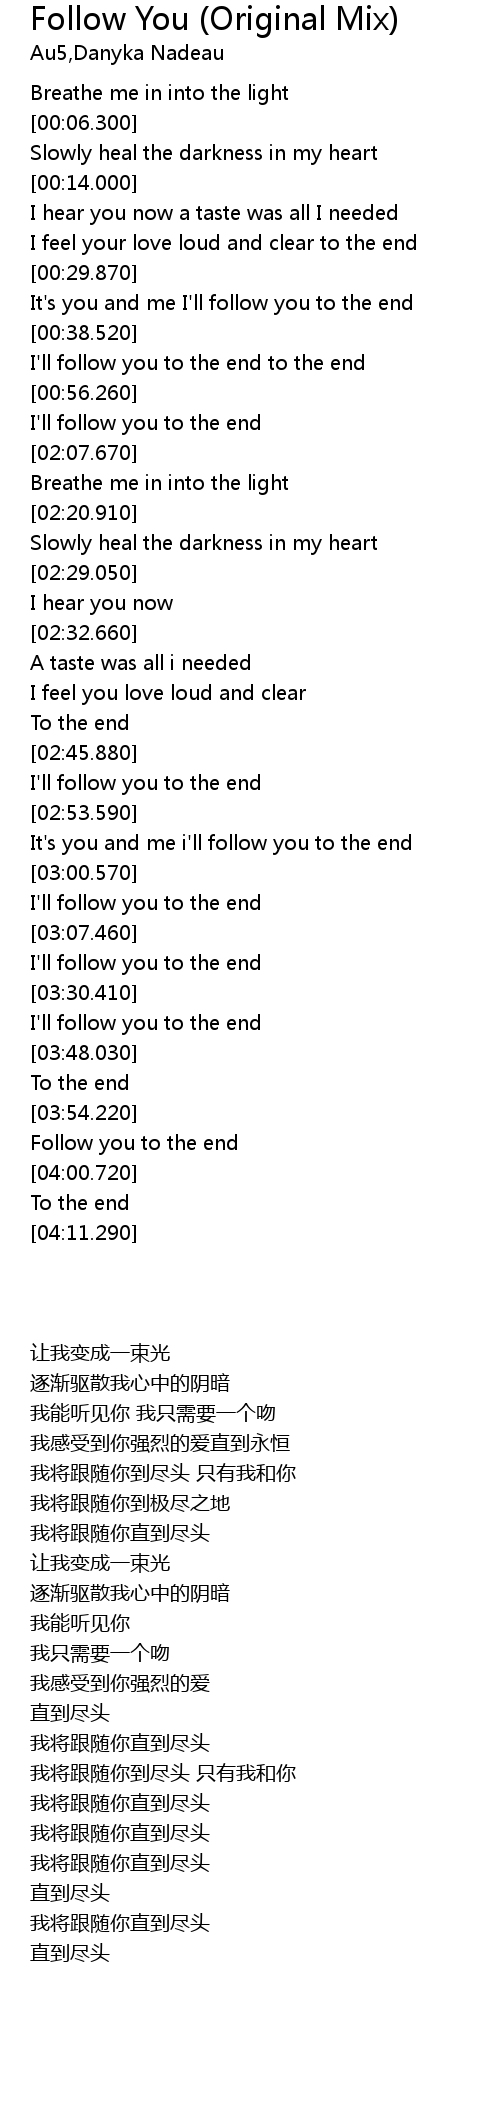 Follow You (Original Mix) Lyrics